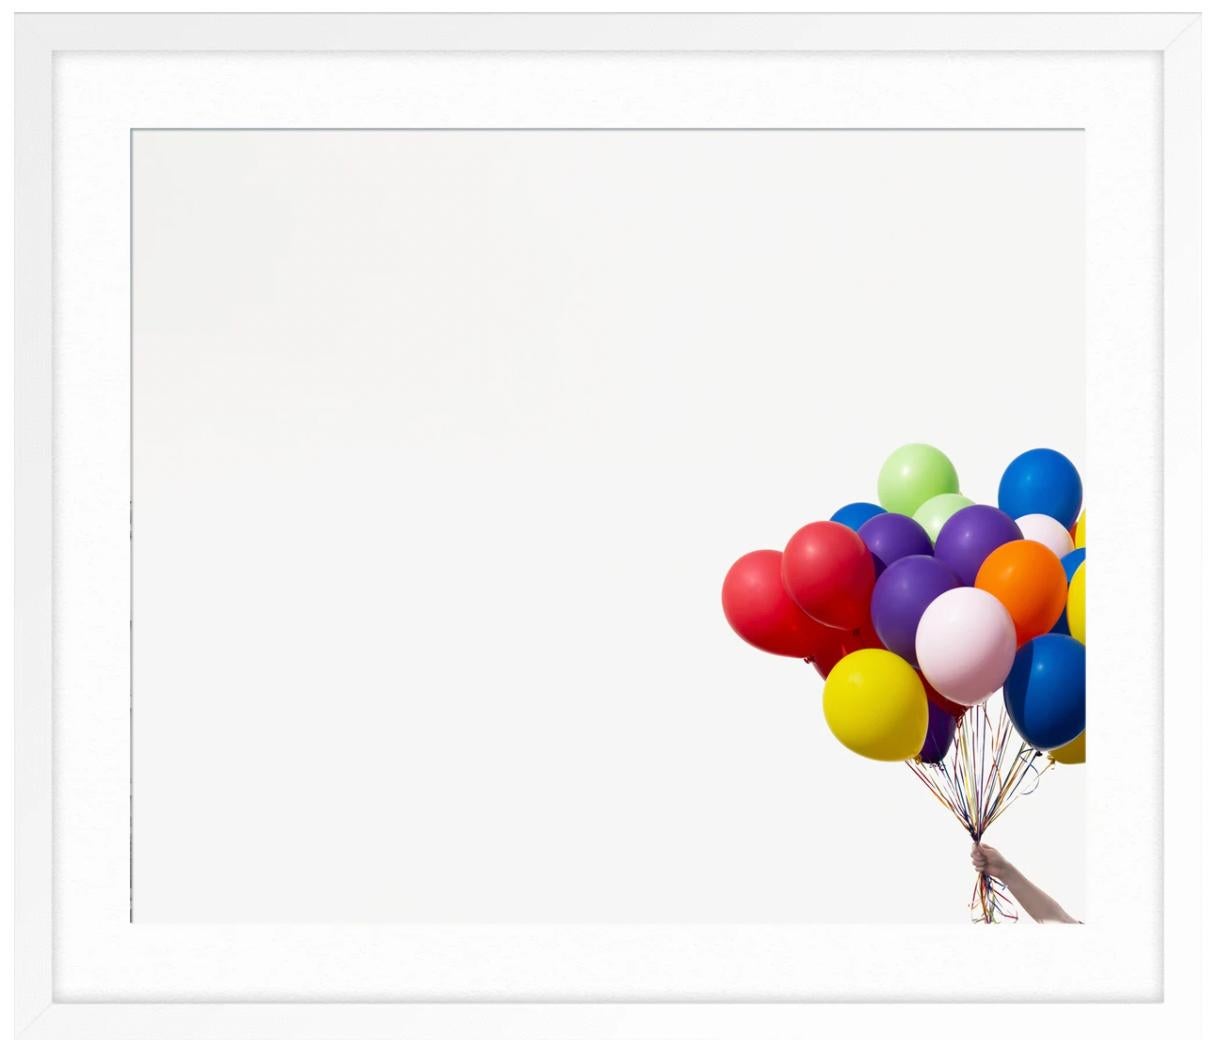 Regenbogen-Blumenballons 1 (Grau), Still-Life Photograph, von Kimberly Genevieve